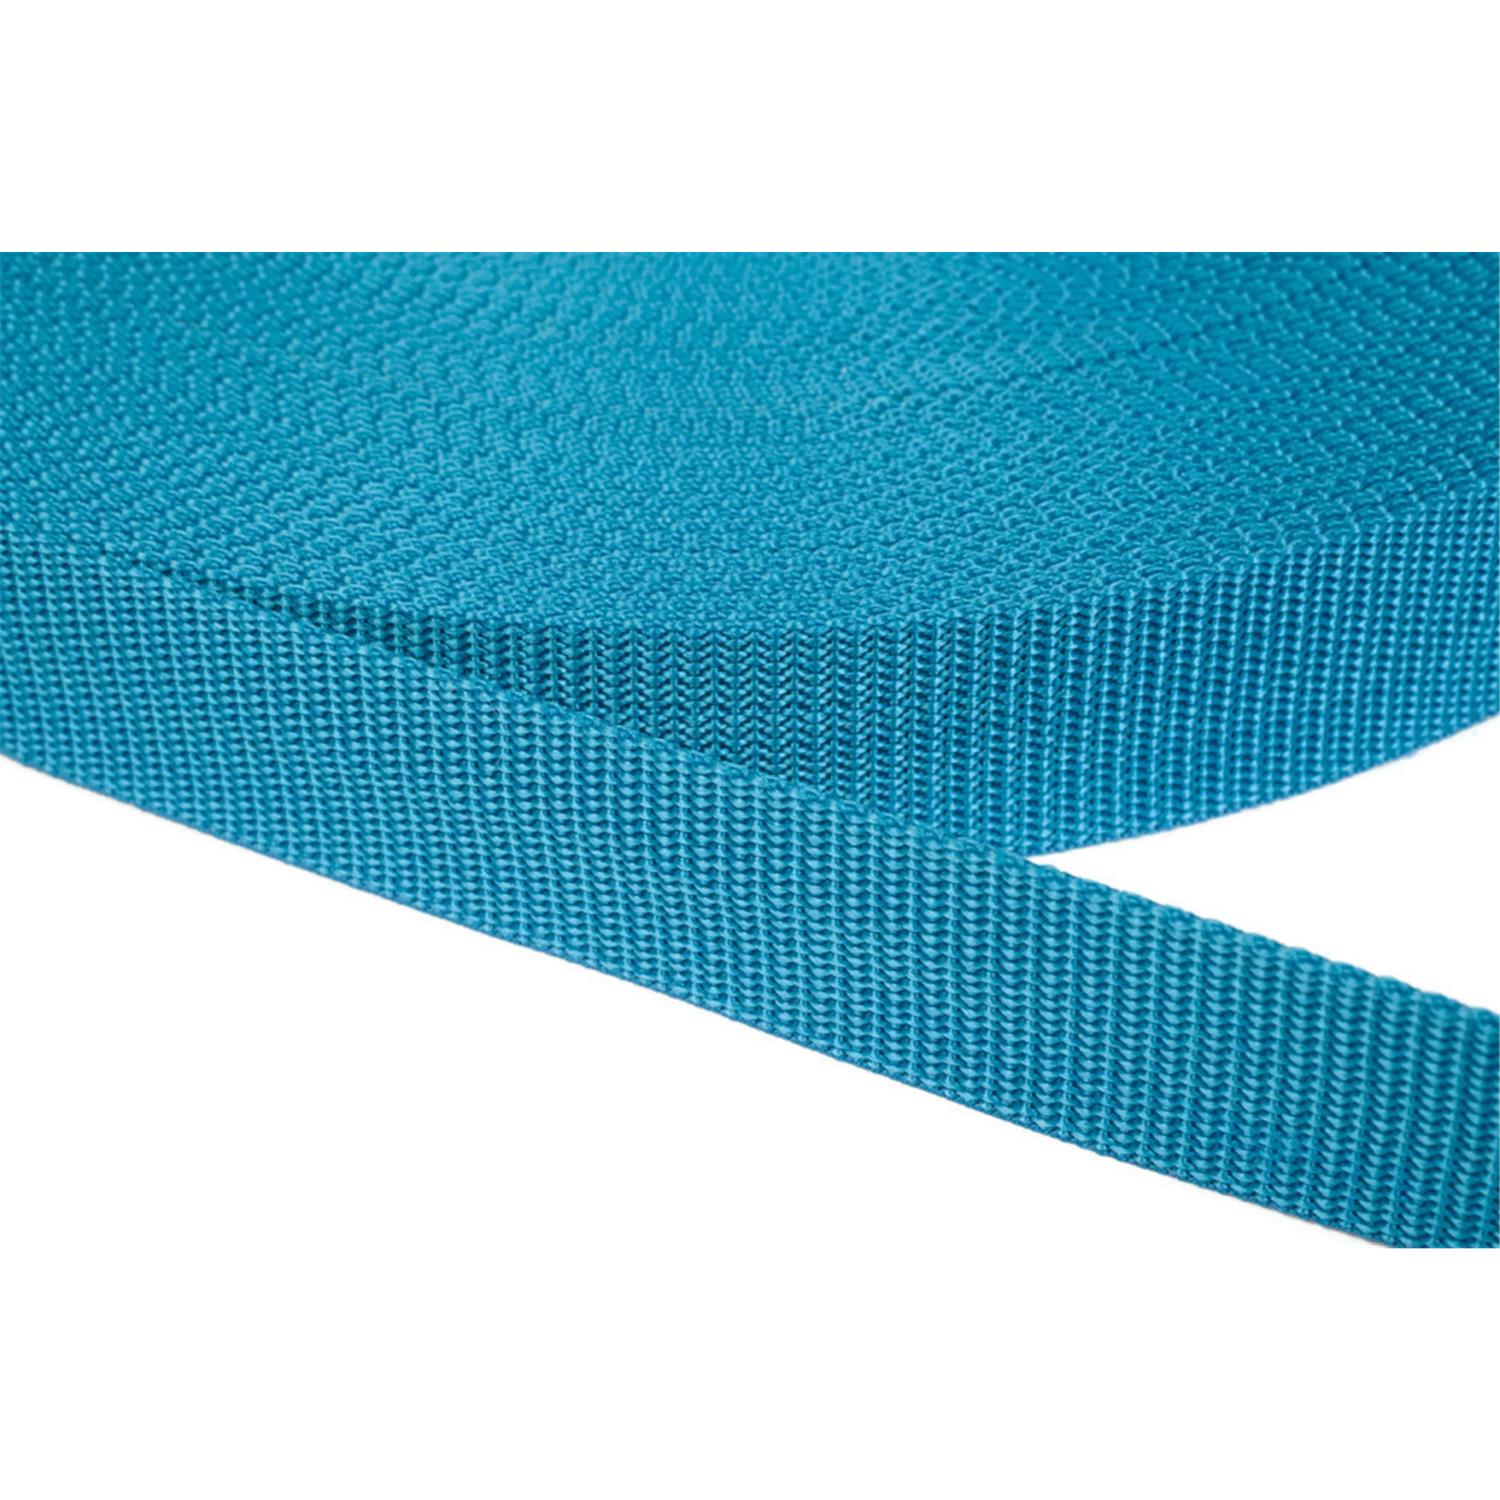 Gurtband 15mm breit aus Polypropylen in 41 Farben 29 - türkis 12 Meter